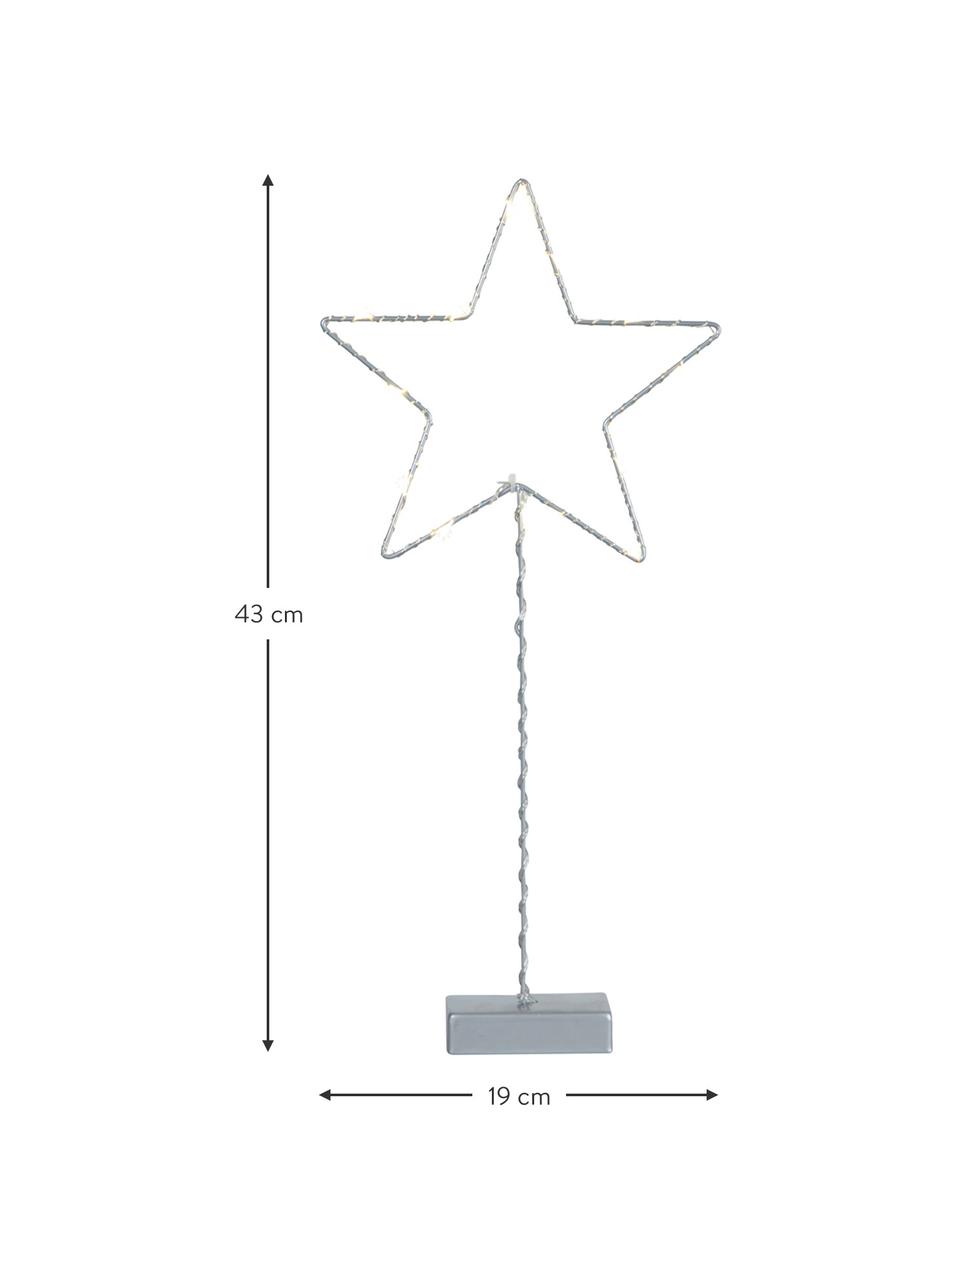 LED Leuchtobjekt Star H 43 cm, batteriebetrieben, Silberfarben, B 19 x H 43 cm